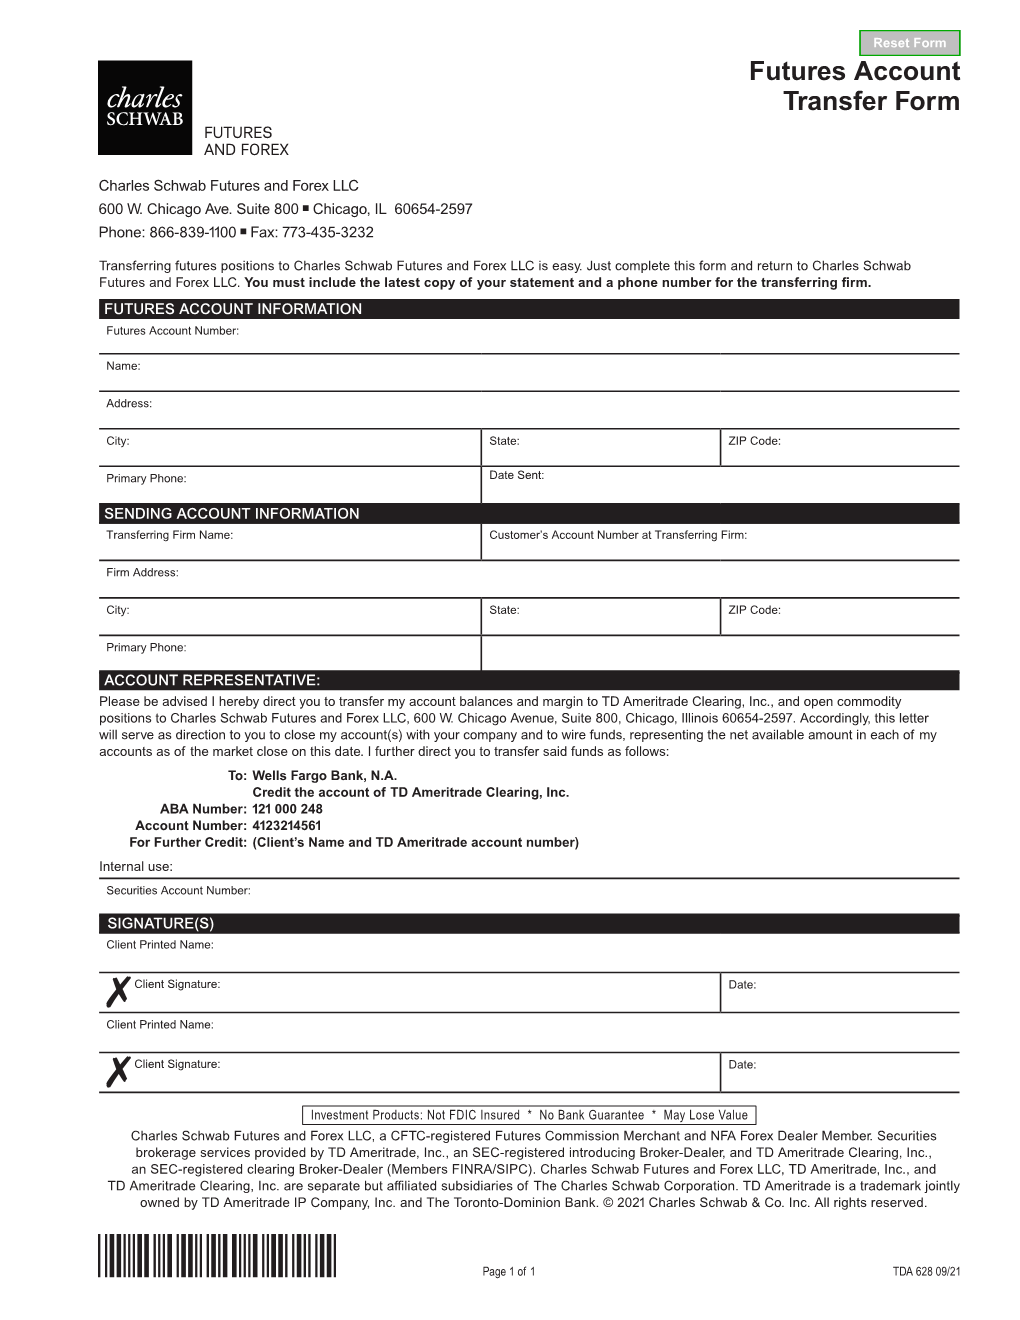 Futures Account Transfer Form-TDA 0421